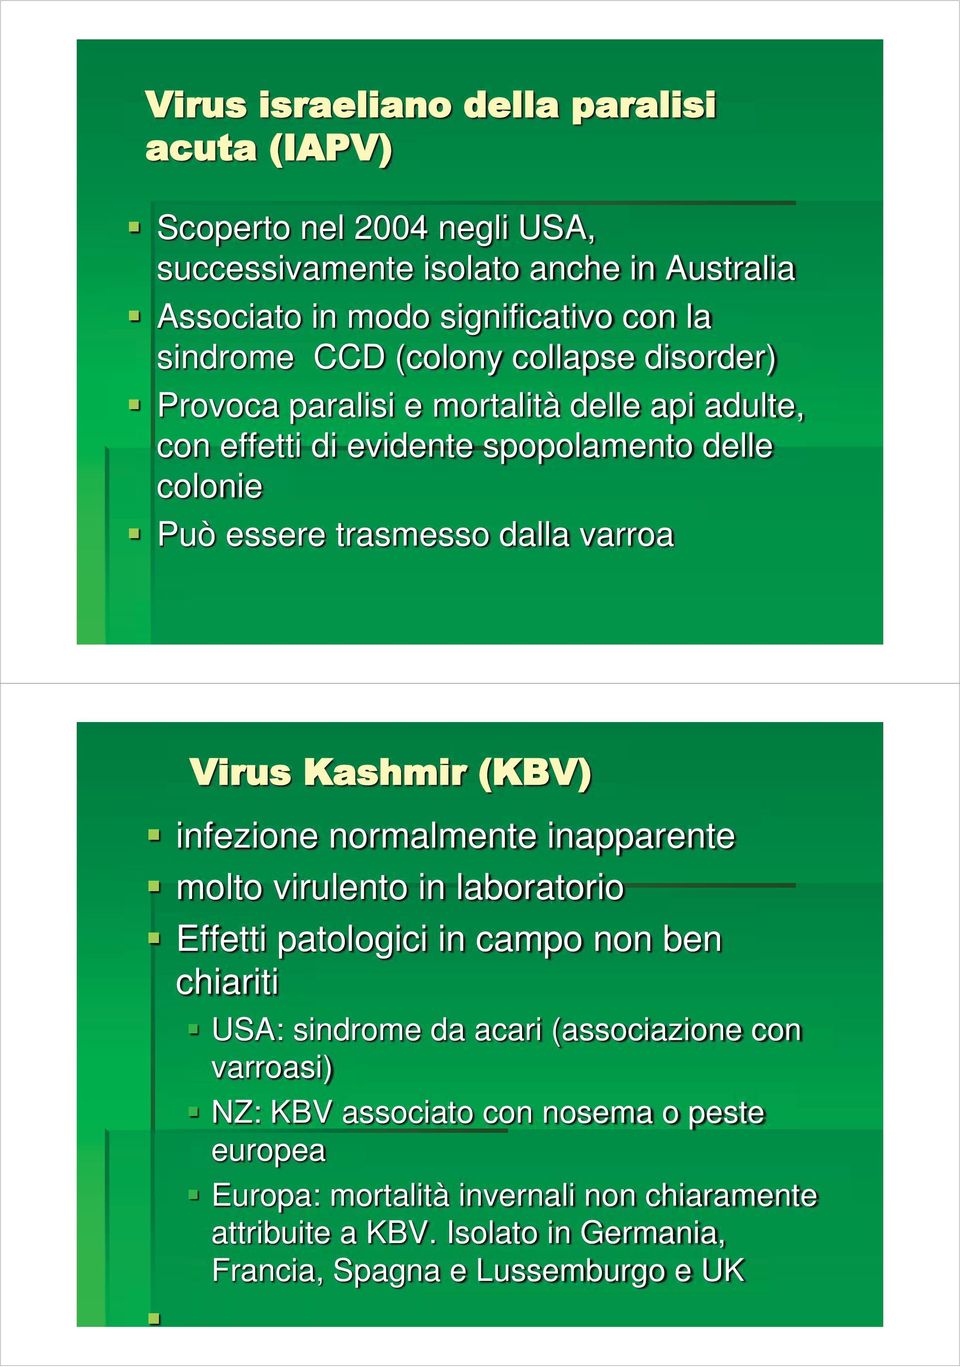 Virus Kashmir (KBV) infezione normalmente inapparente molto virulento in laboratorio Effetti patologici in campo non ben chiariti USA: sindrome da acari (associazione